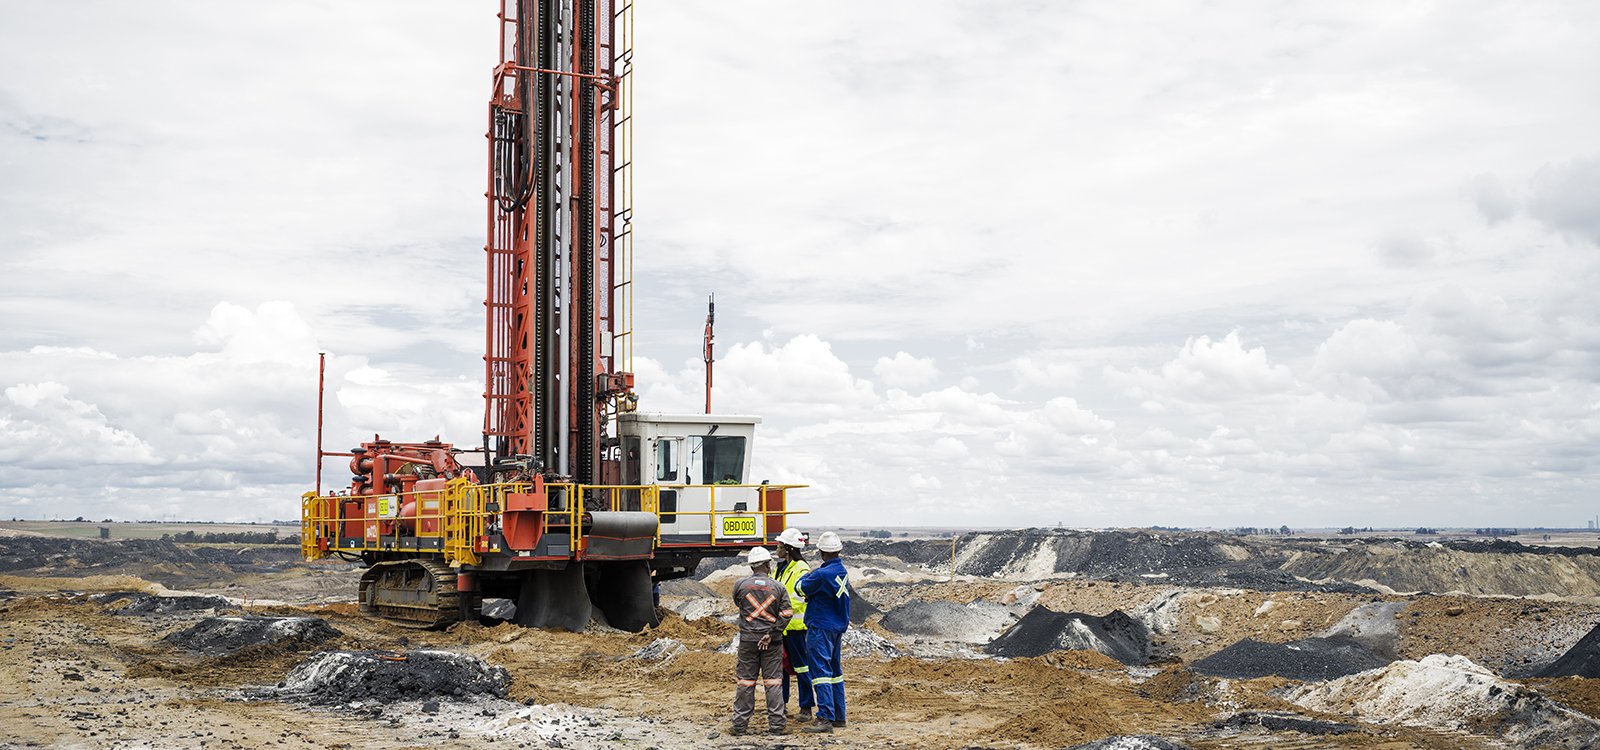 多通道钻机的低压配置适用于Mafube矿区的软岩掘进，并配备了山特维克压缩机管理系统。